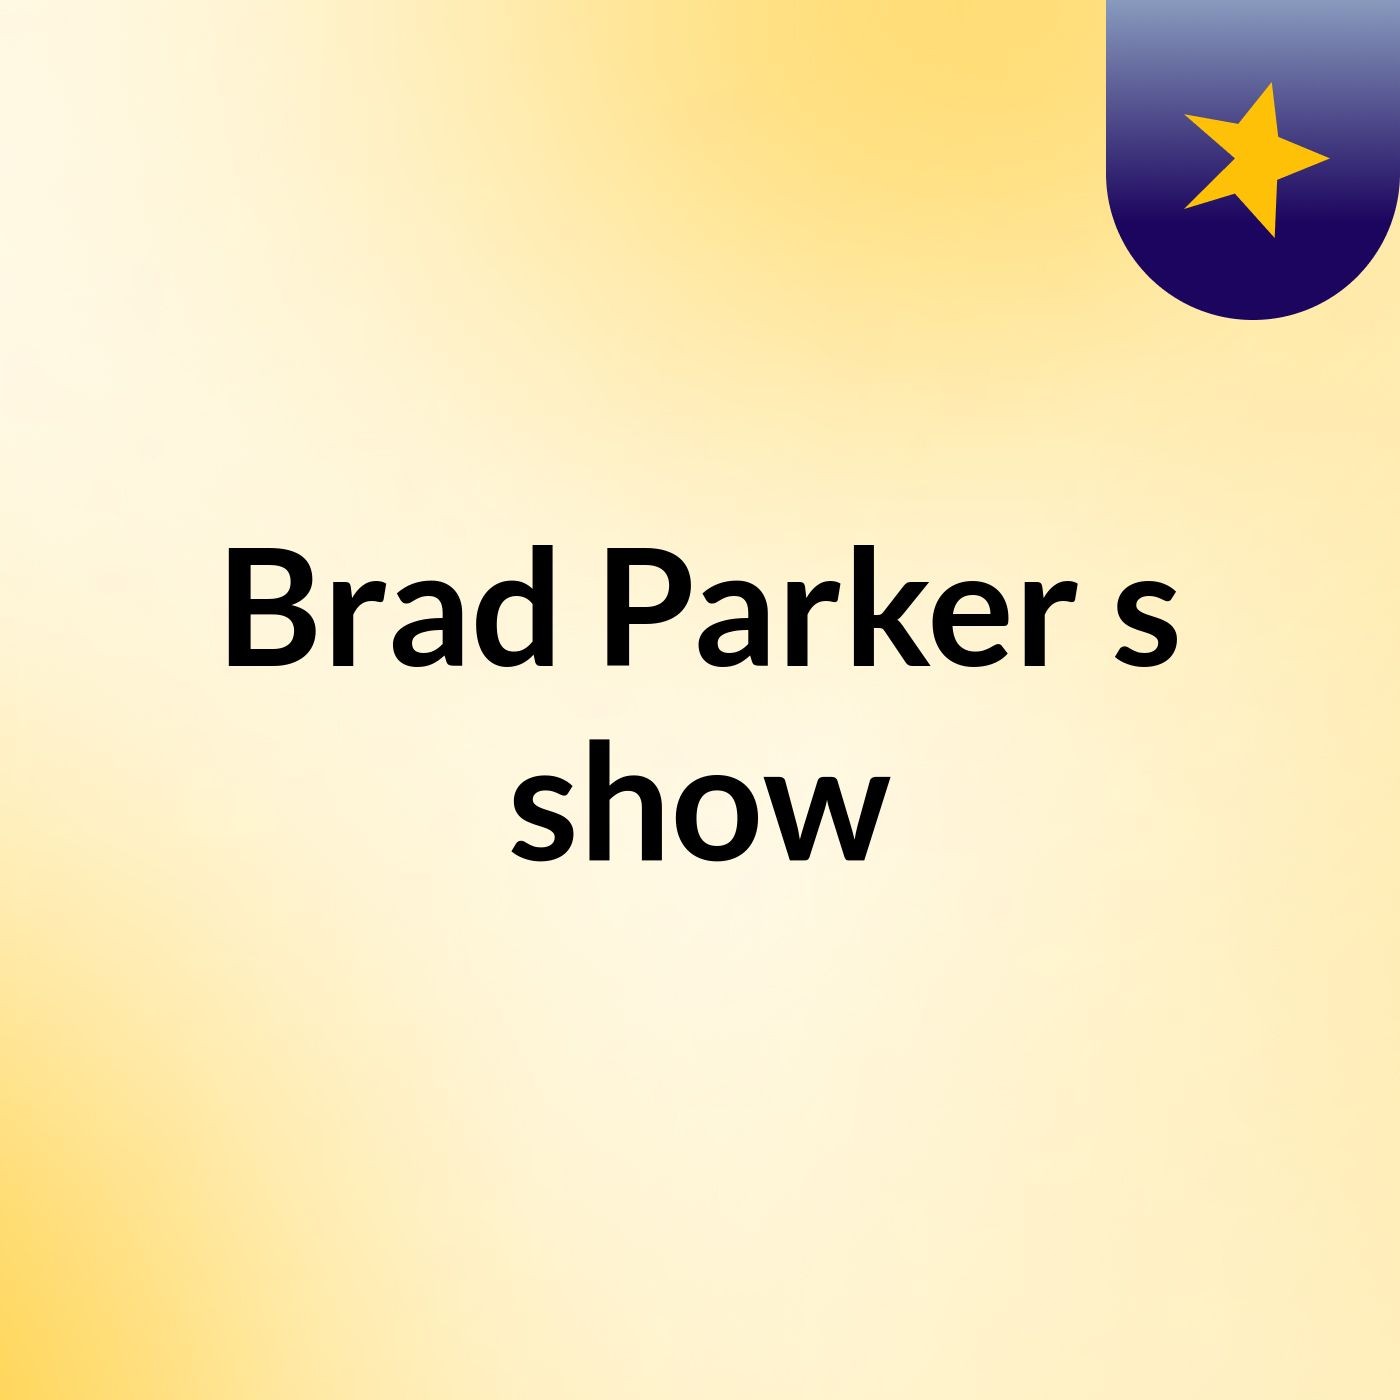 Brad Parker's show